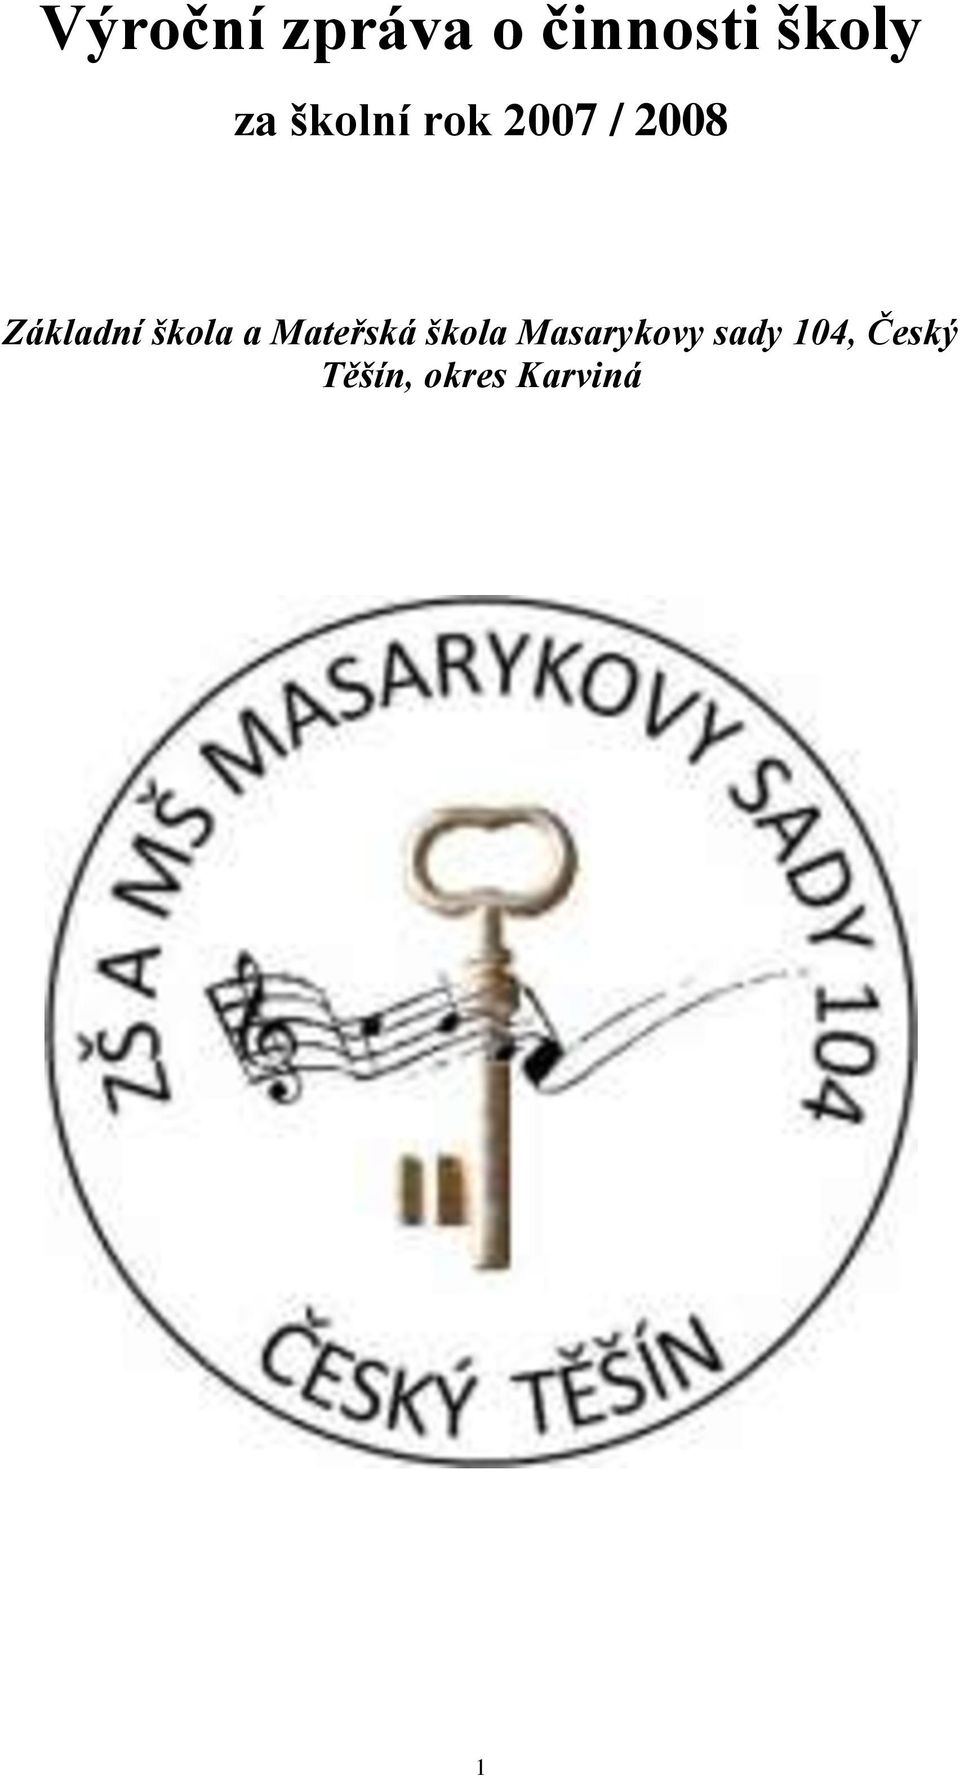 škola a Mateřská škola Masarykovy